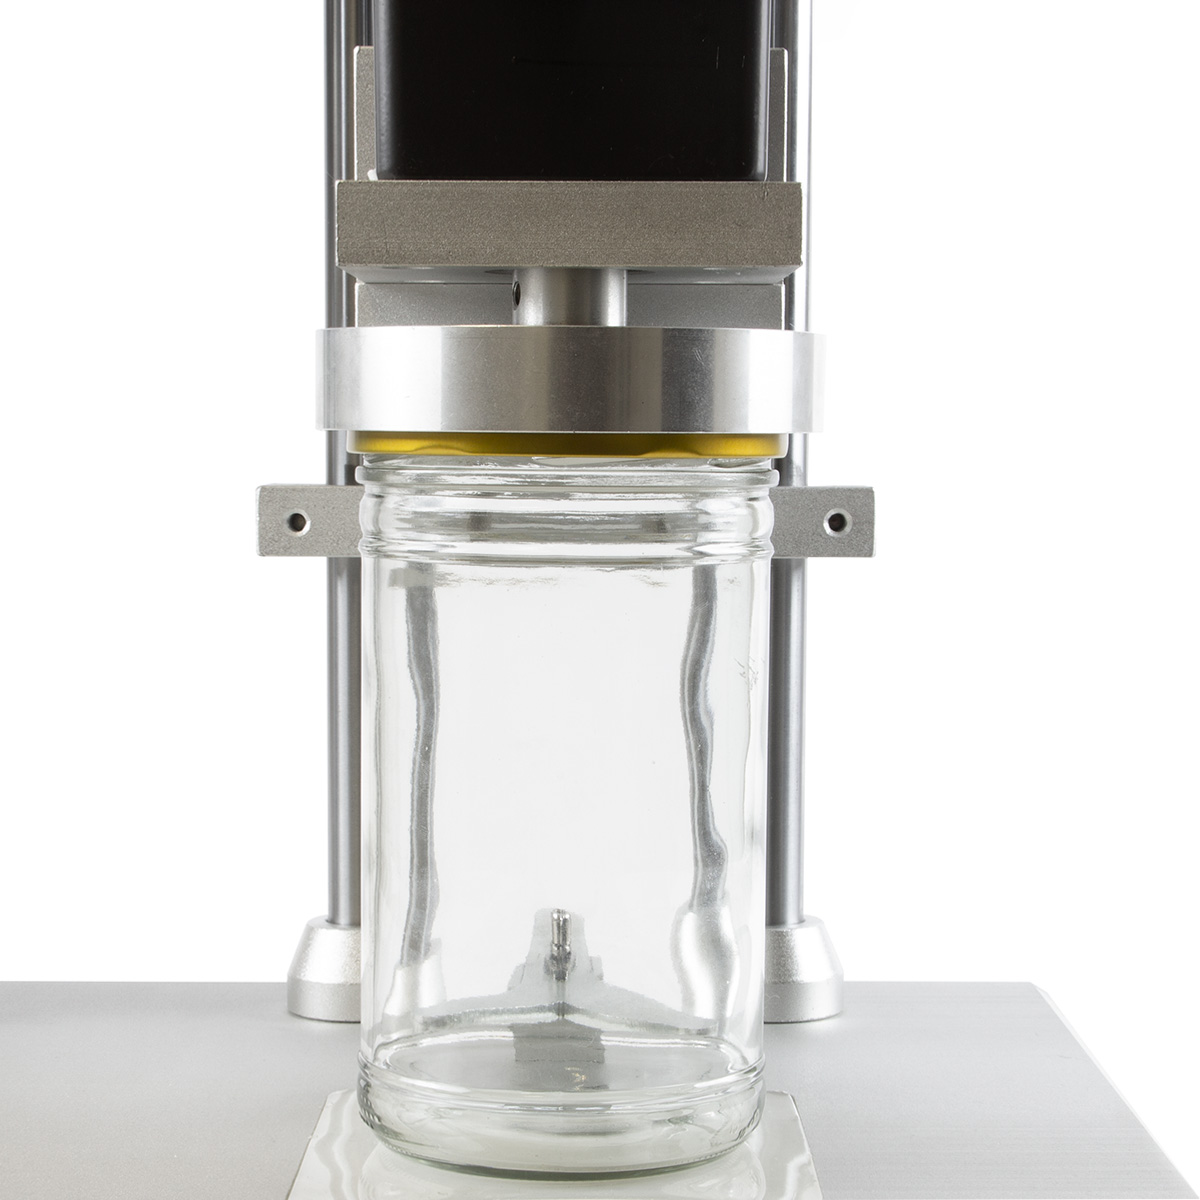 Automatická víčkovačka pro zavařovací sklenice a láhve se šroubovacím uzávěrem